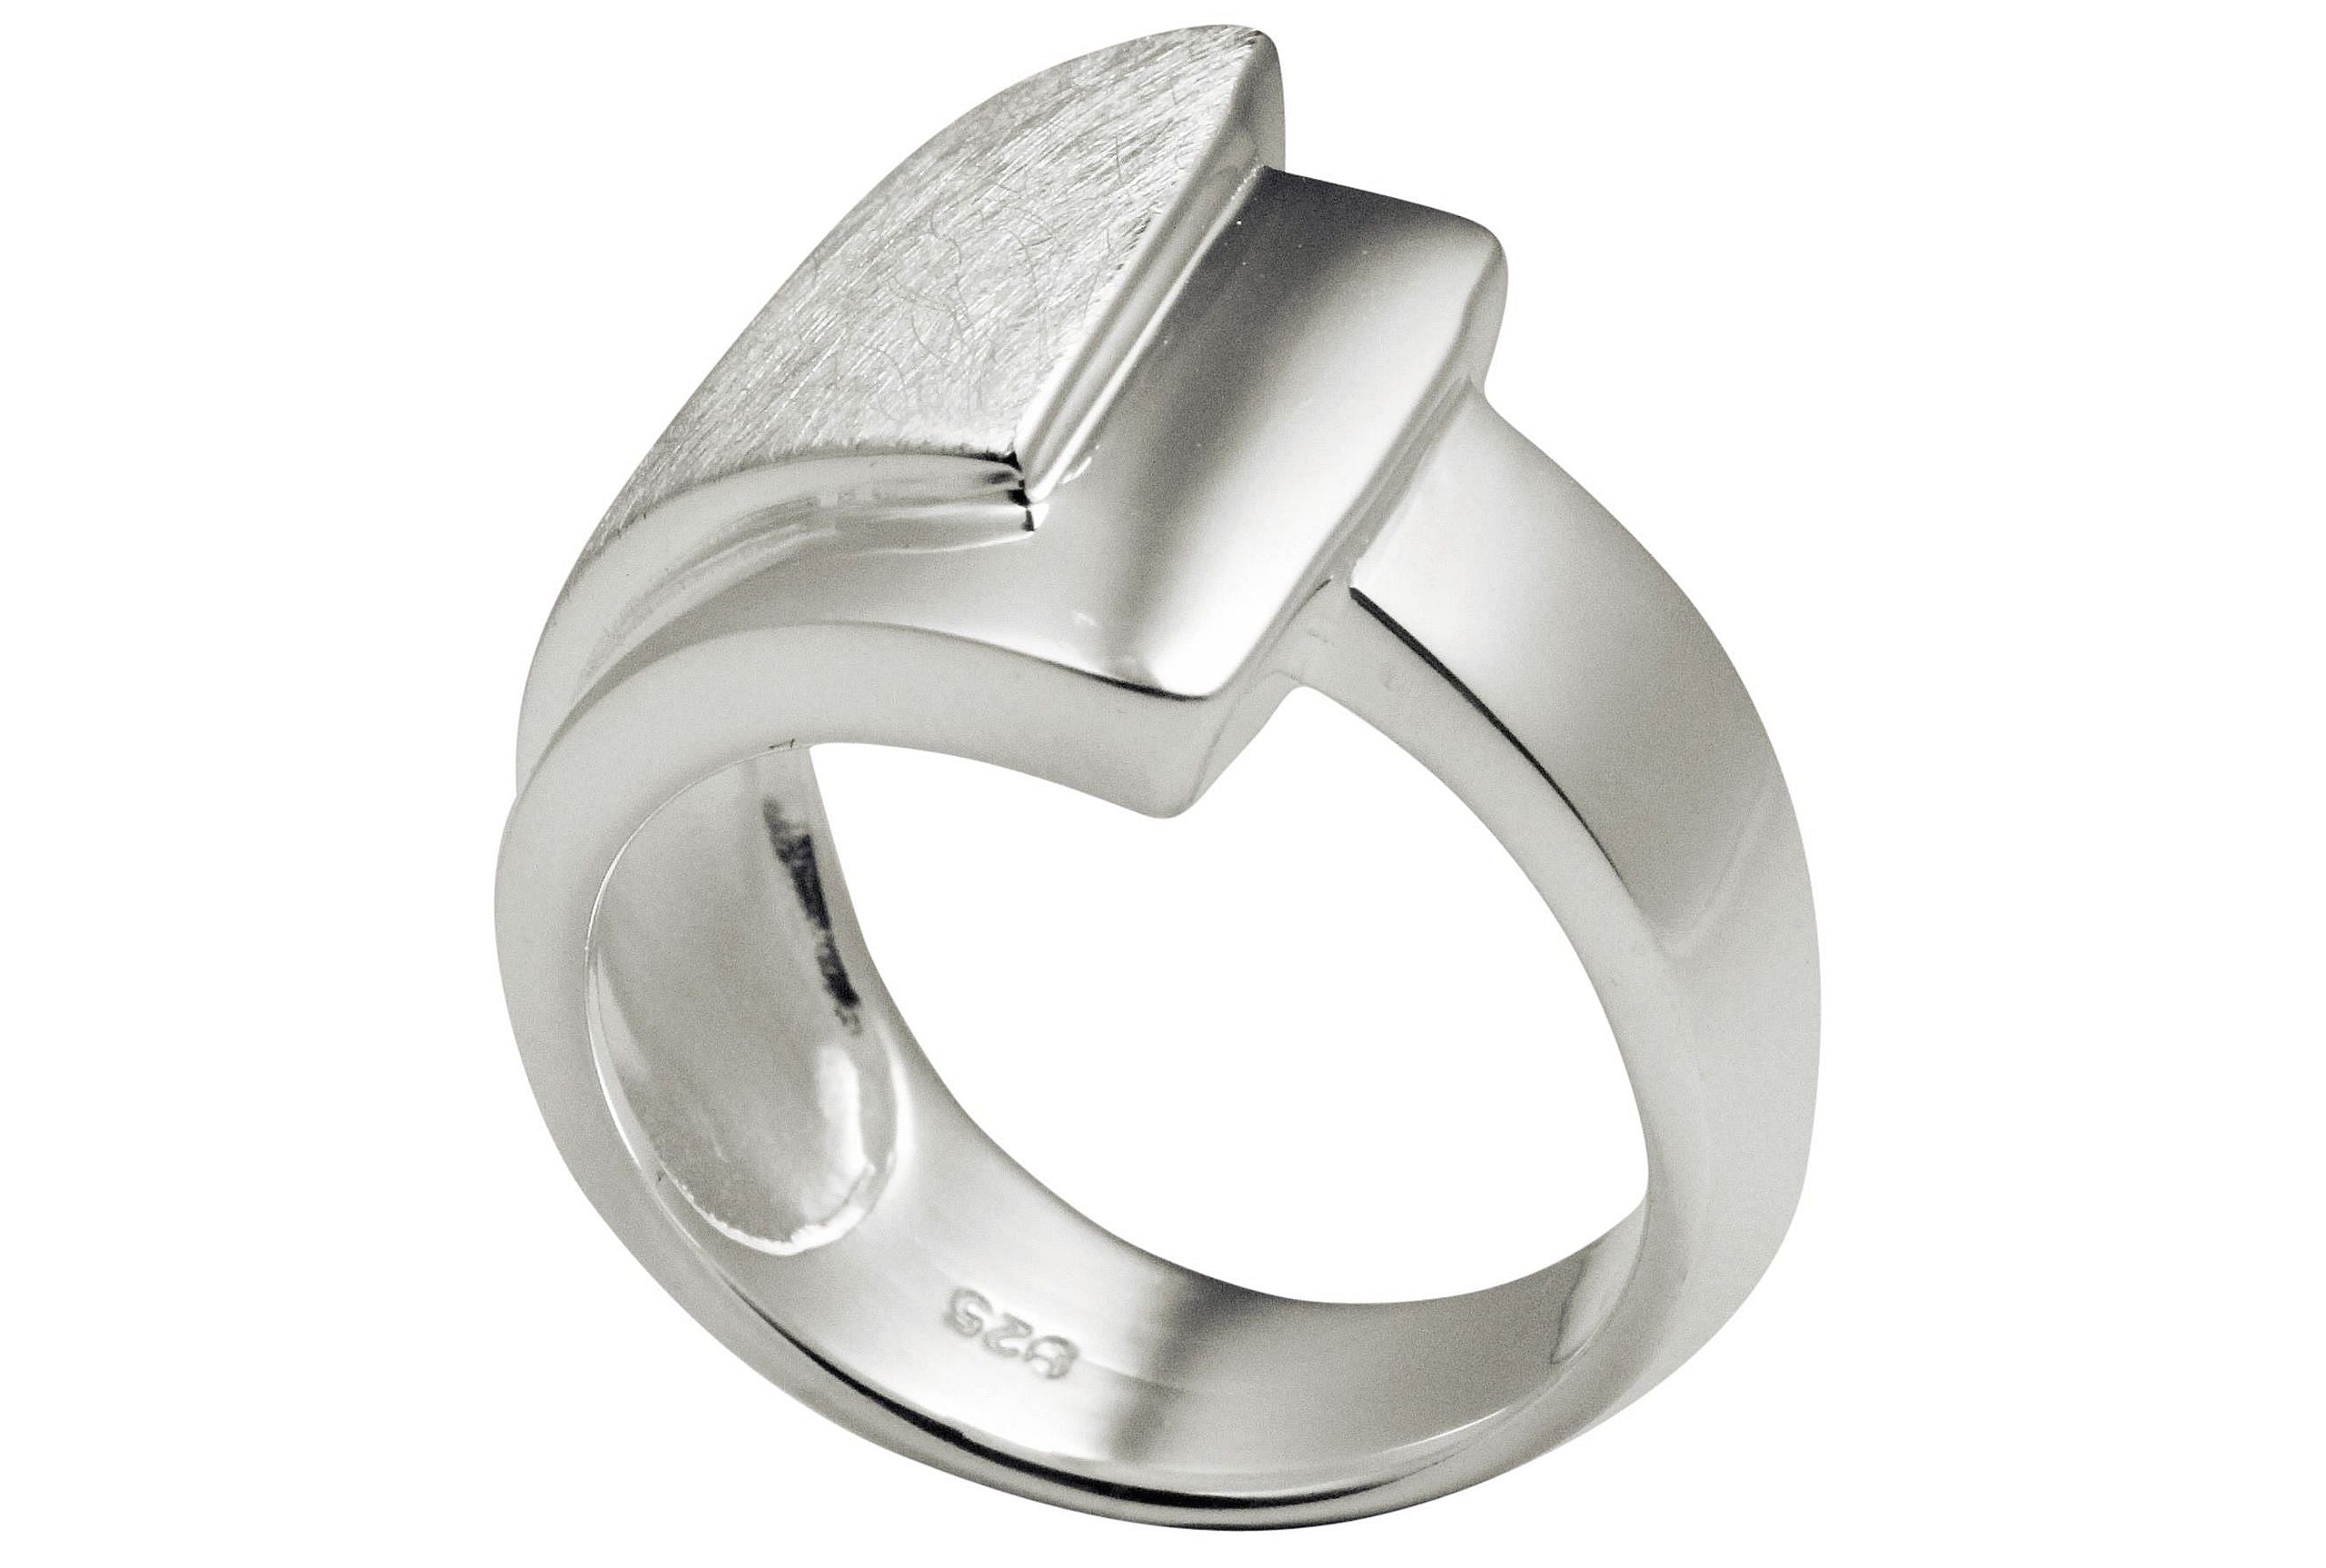 Ein Bandring aus Silber für Damen, bei dem ein oberer gebürsteter Ring mit einem unteren glänzenden Ring zu einem Schmuckstück verschmilzt.